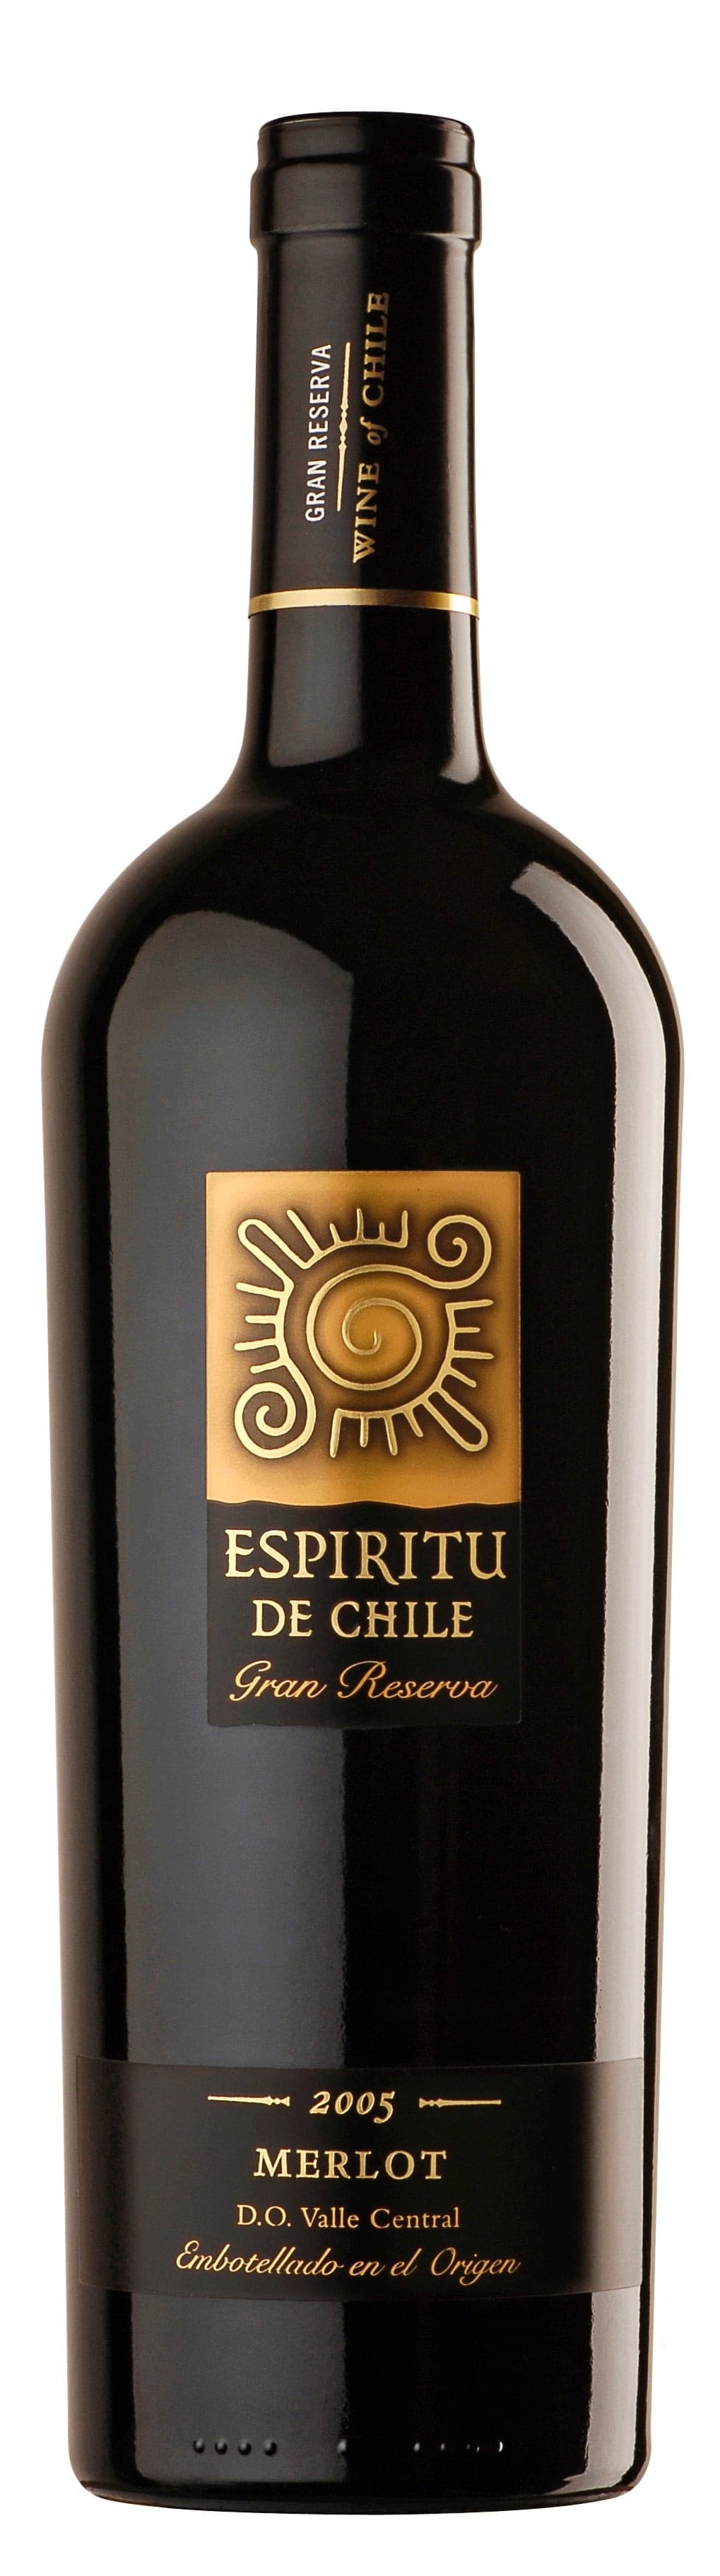 Espiritu de Chile Grand Reserva Merlot 2011 750ml.